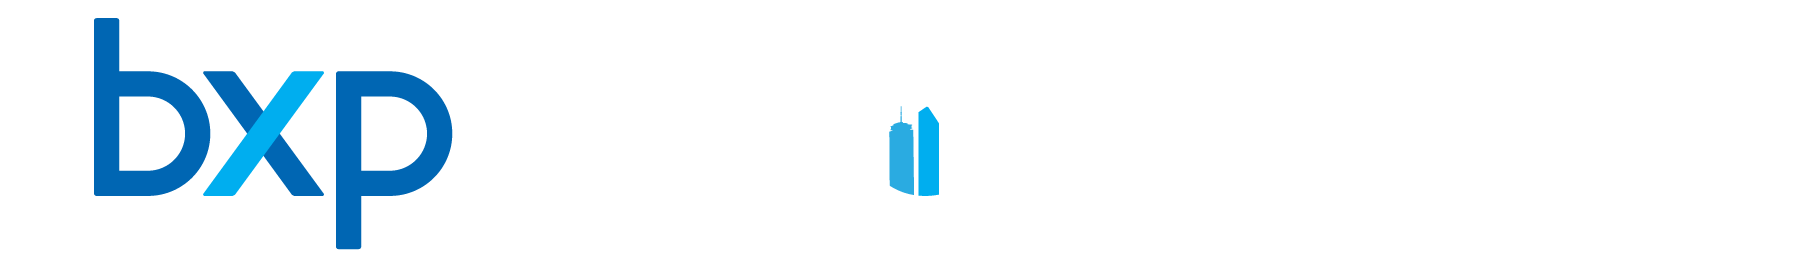 The BXP Opportunity Logo - white